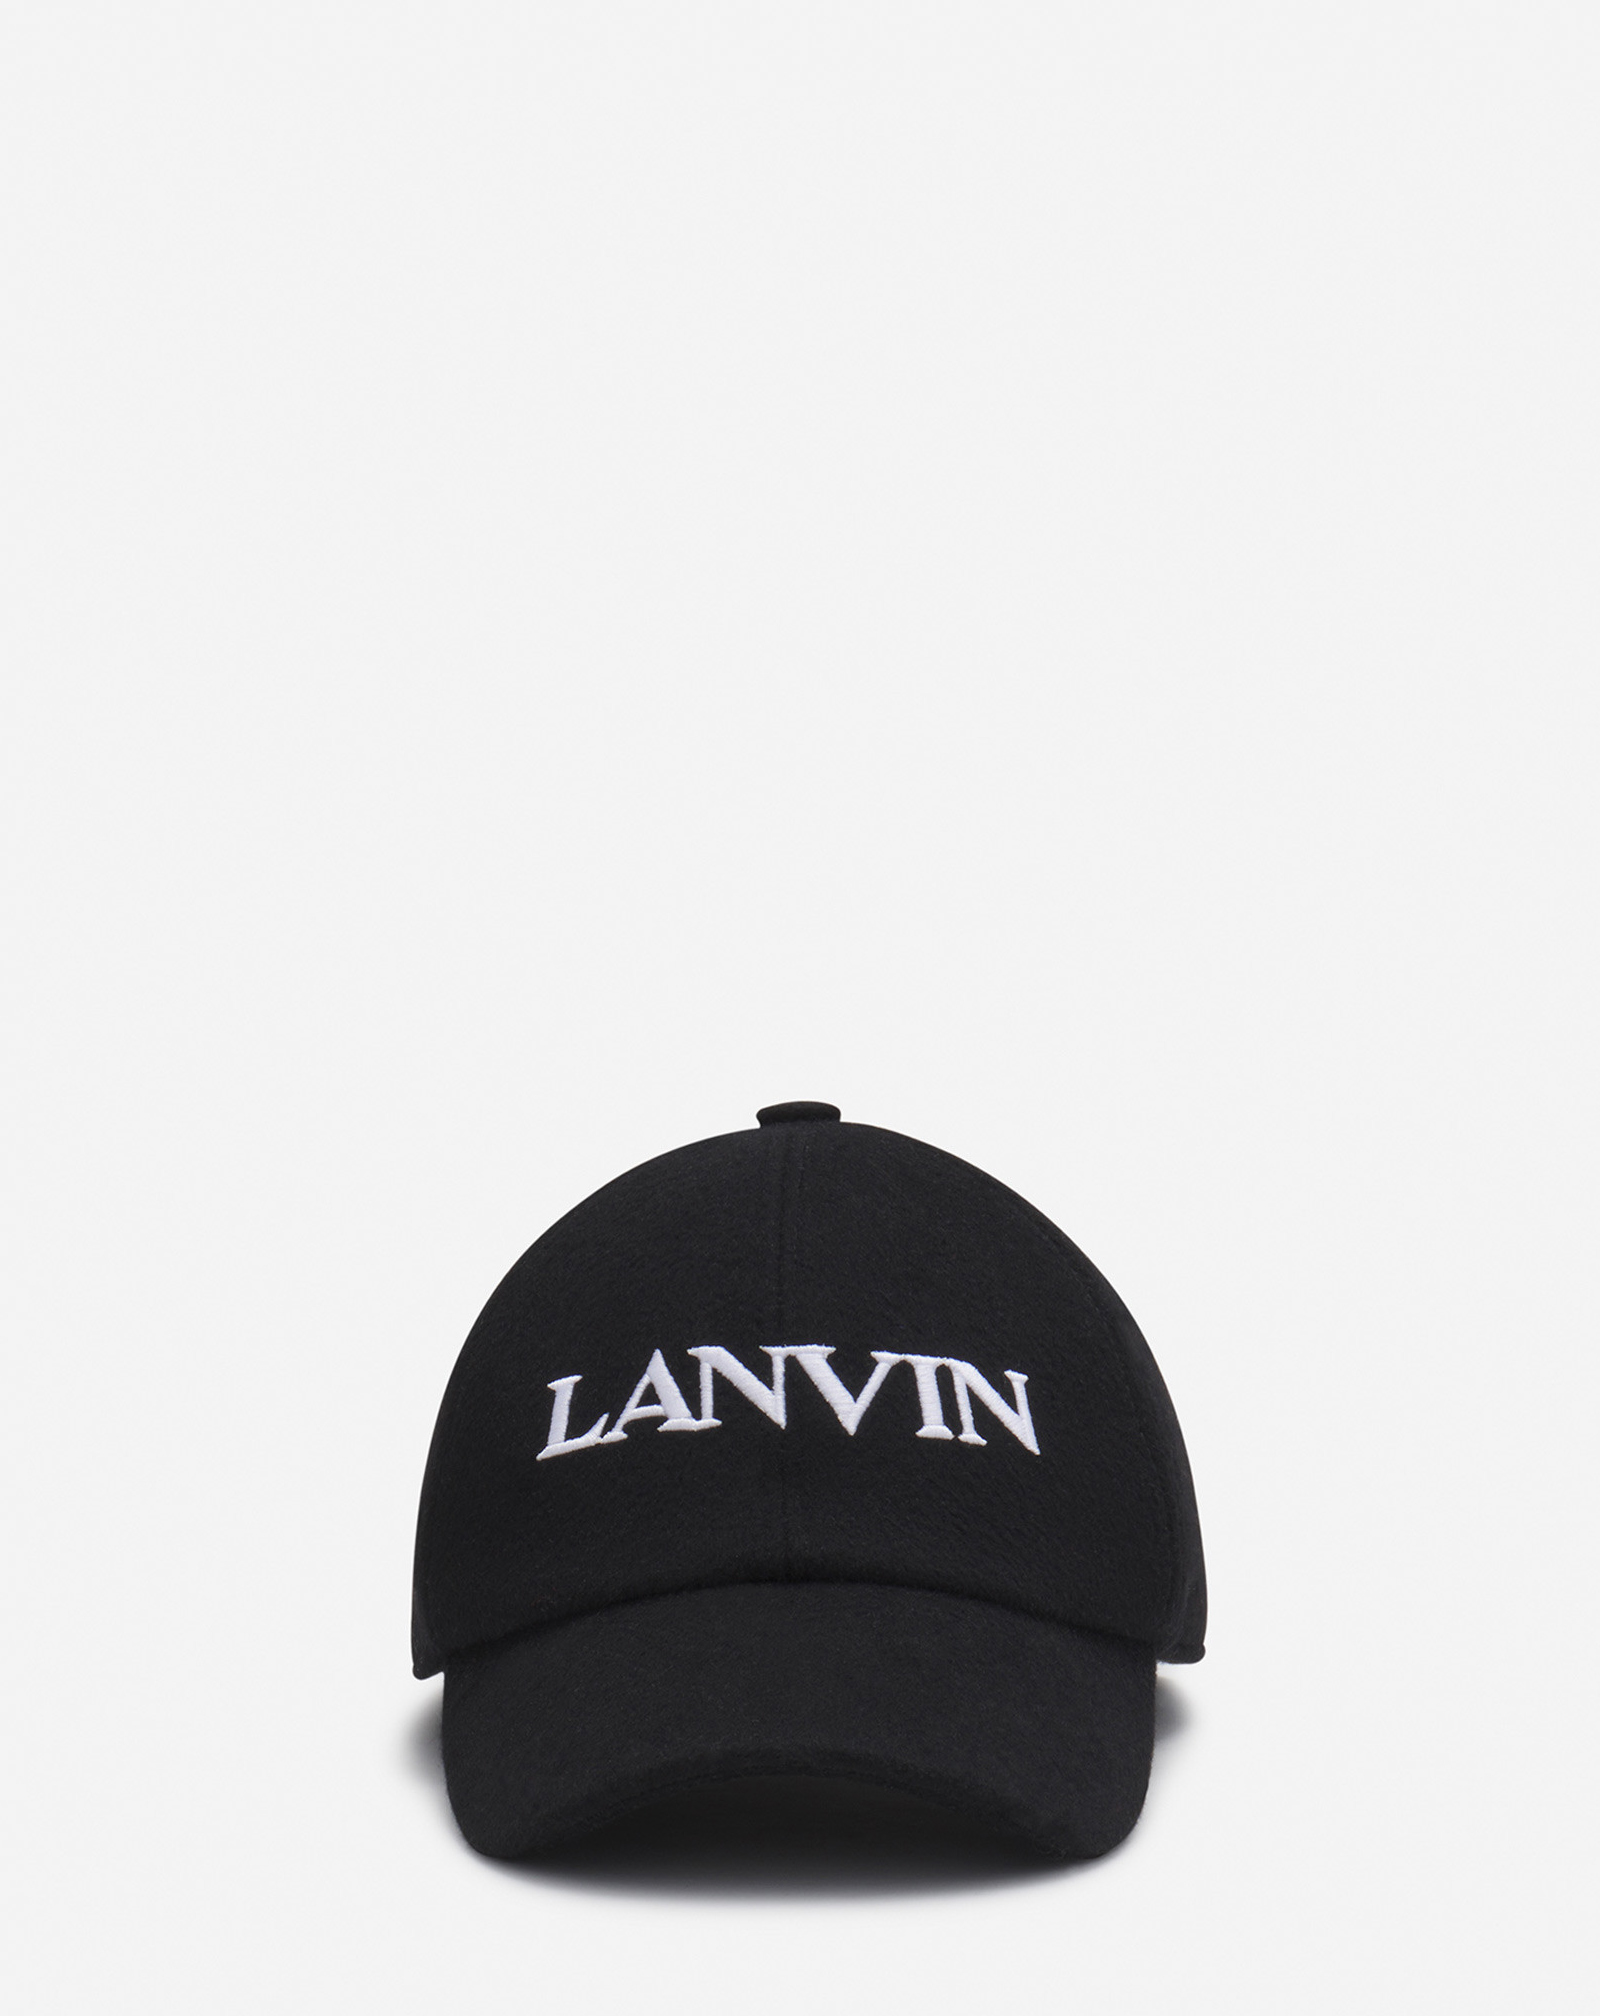 Lanvin Wool Cap For Women In Black